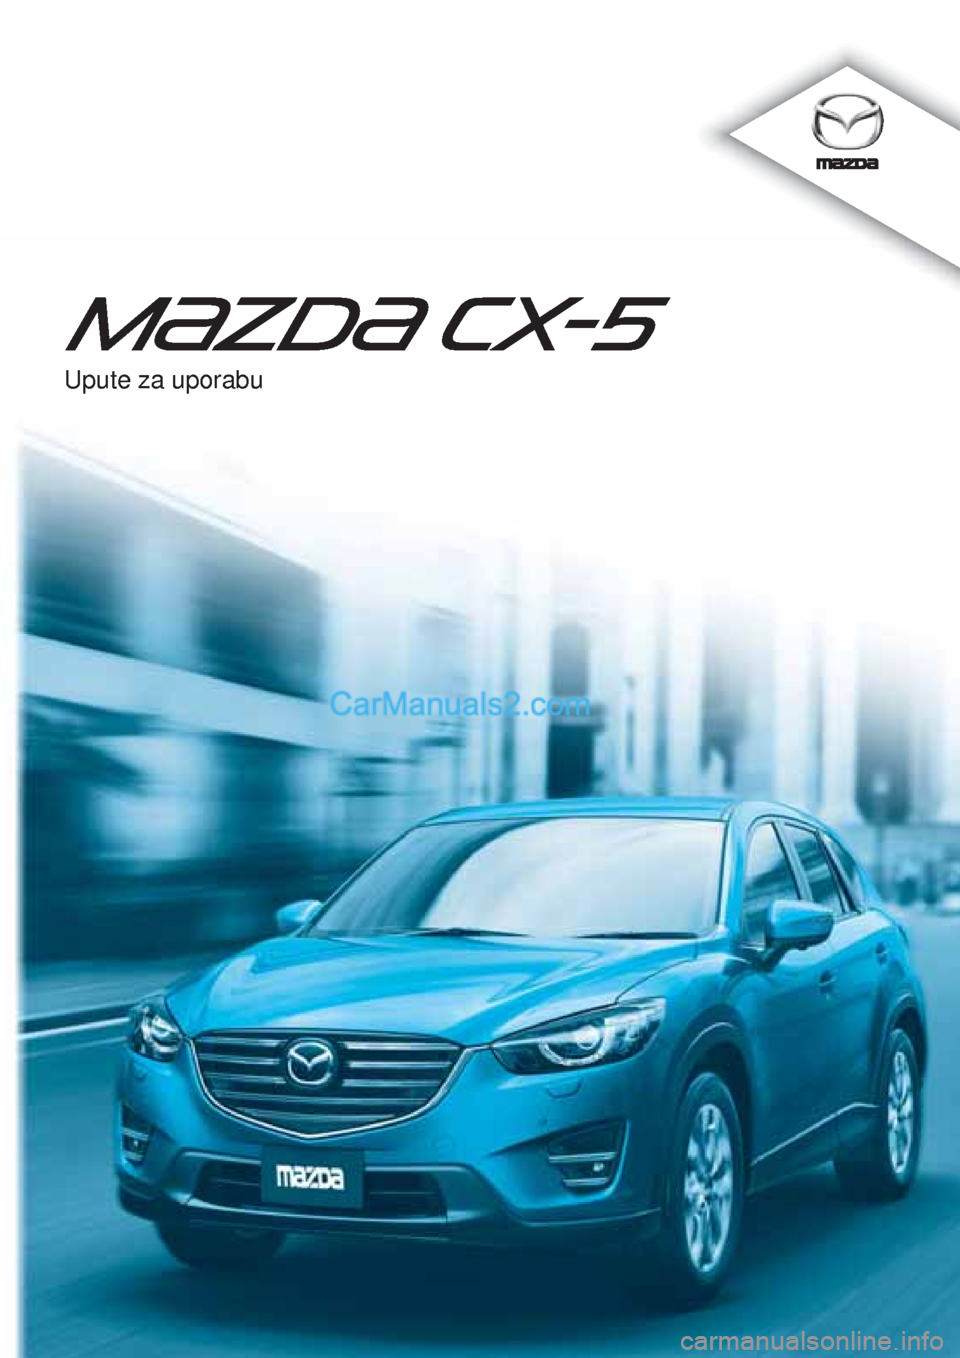 MAZDA MODEL CX-5 2015  Upute za uporabu (in Crotian) 